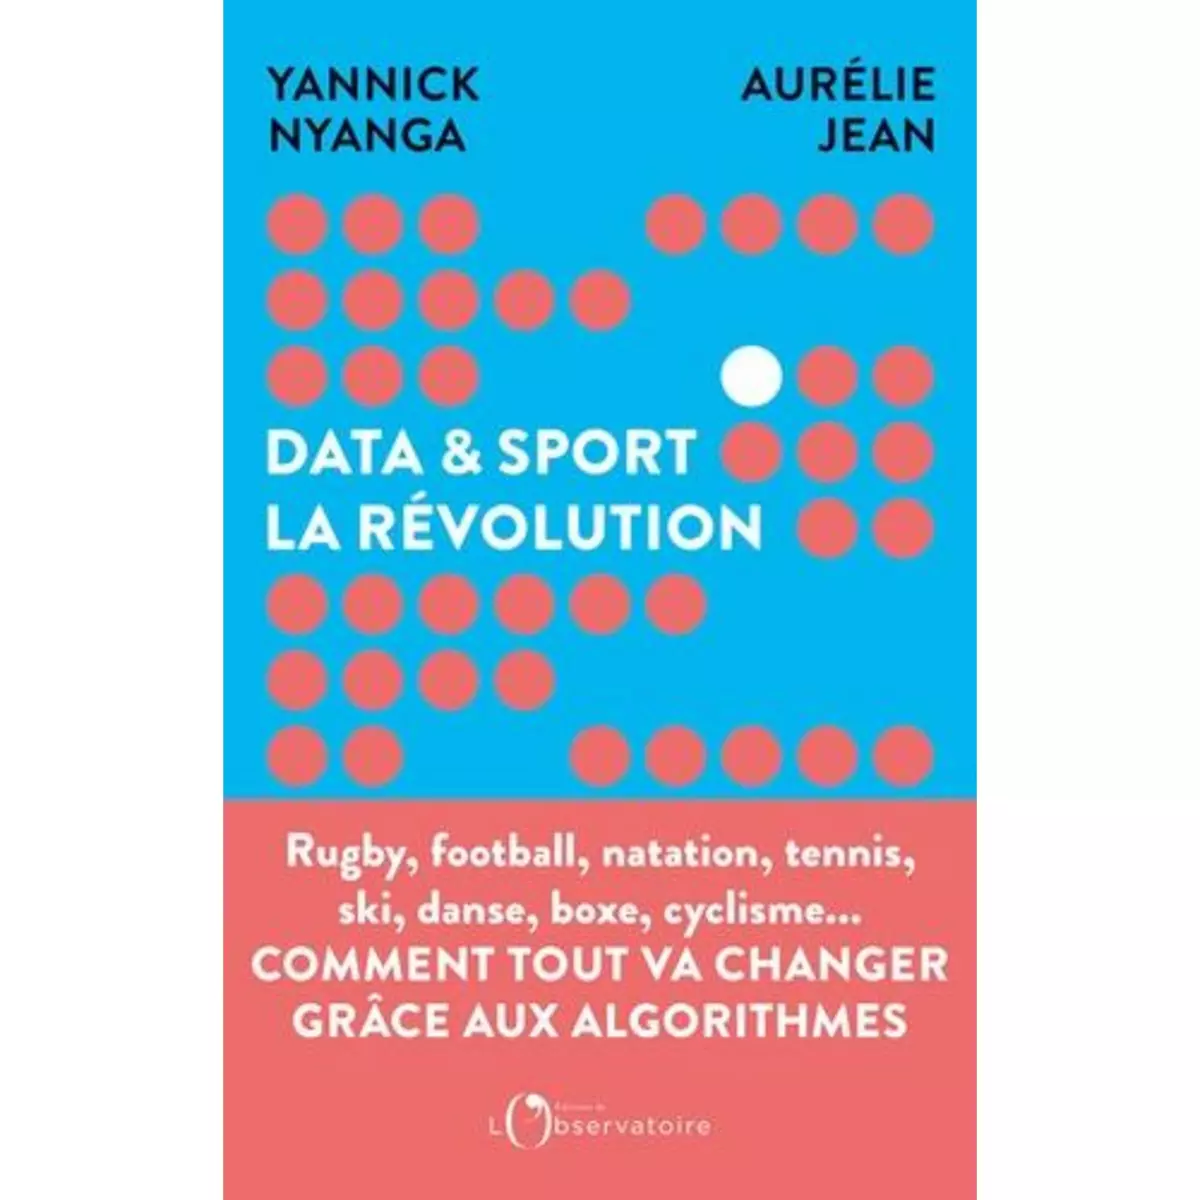  DATA & SPORT : LA REVOLUTION. COMMENT LA DATA REVOLUTIONNE LE SPORT, Jean Aurélie